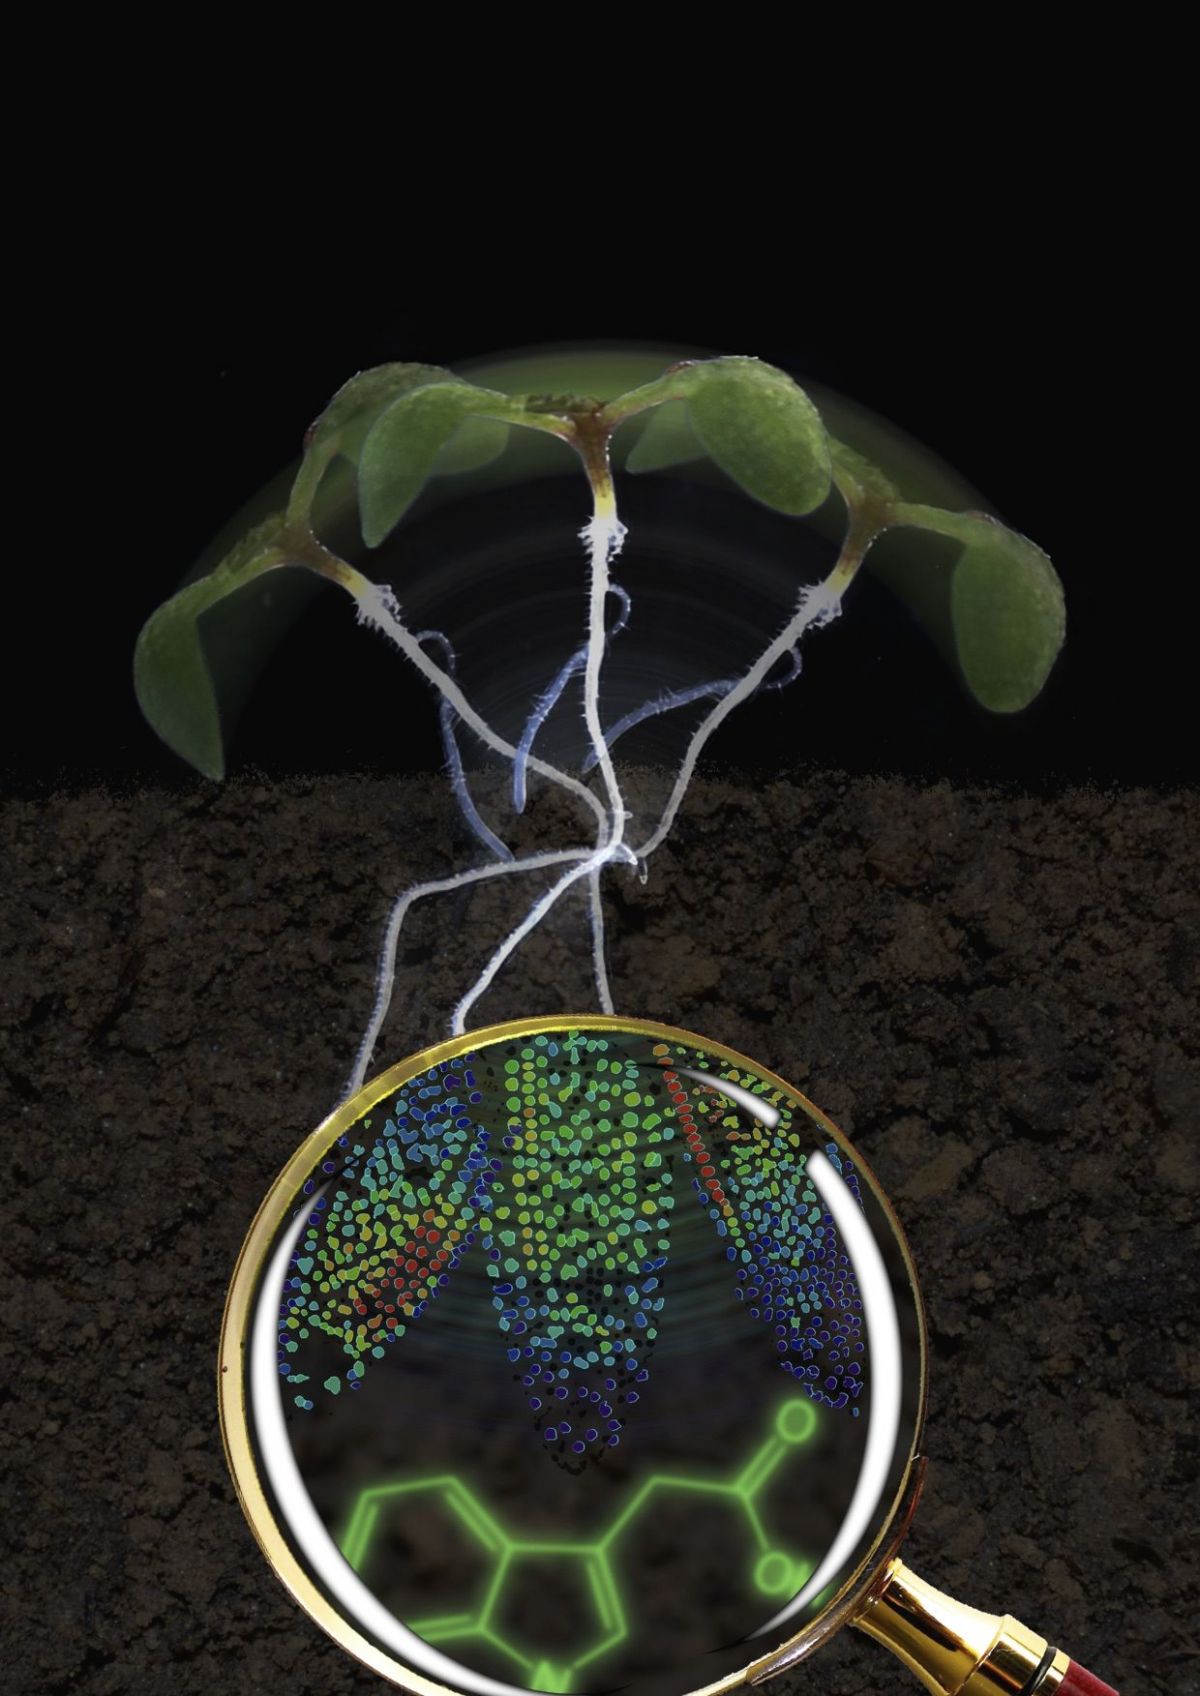 Keimling der Modellpflanze Arabidopsis thaliana. Die Lupe vergrößert die Wurzelspitze: Die Farben verdeutlichen die Auxin-Menge: zunehmend von Blau über Grün und Gelb bis Rot. Das meiste Auxin befindet sich dort, wo die Neigung am größten ist.
